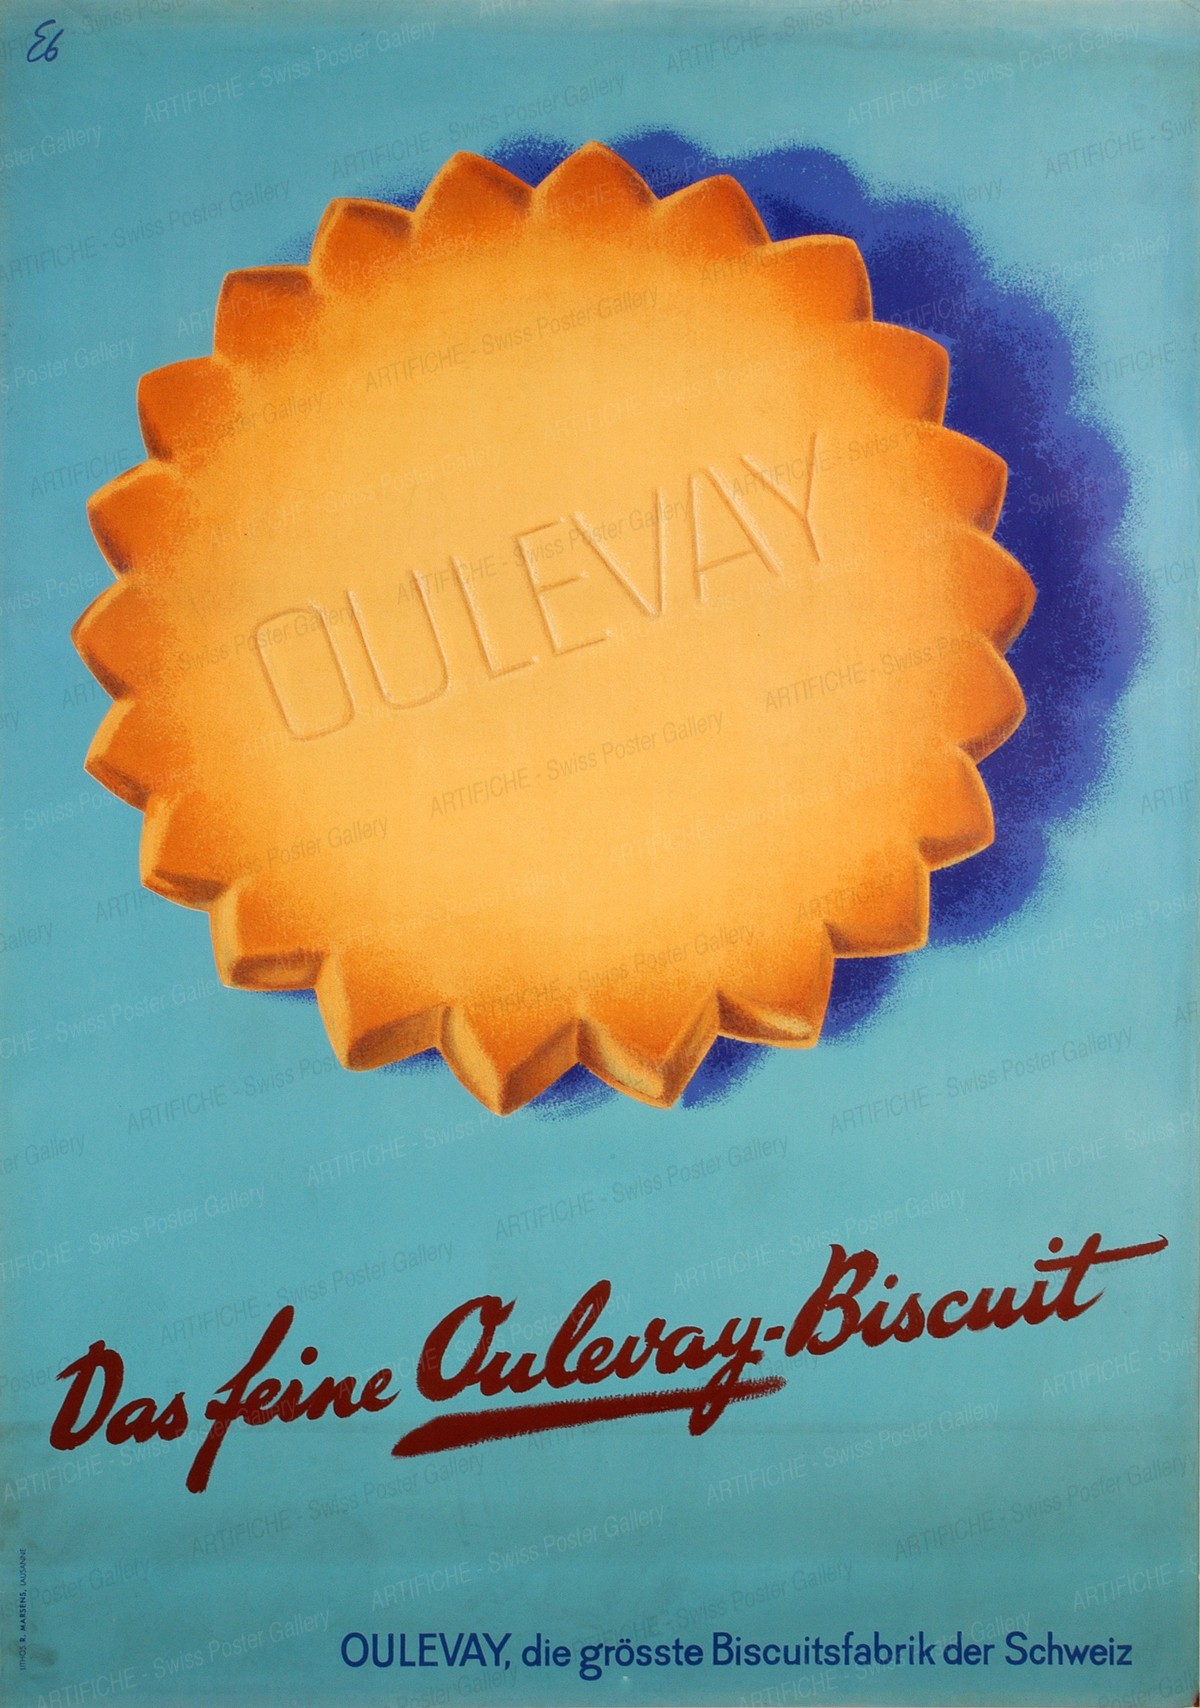 Oulevay Bisquits – die grösste Biscuitsfabrik der Schweiz, Emil Ebner